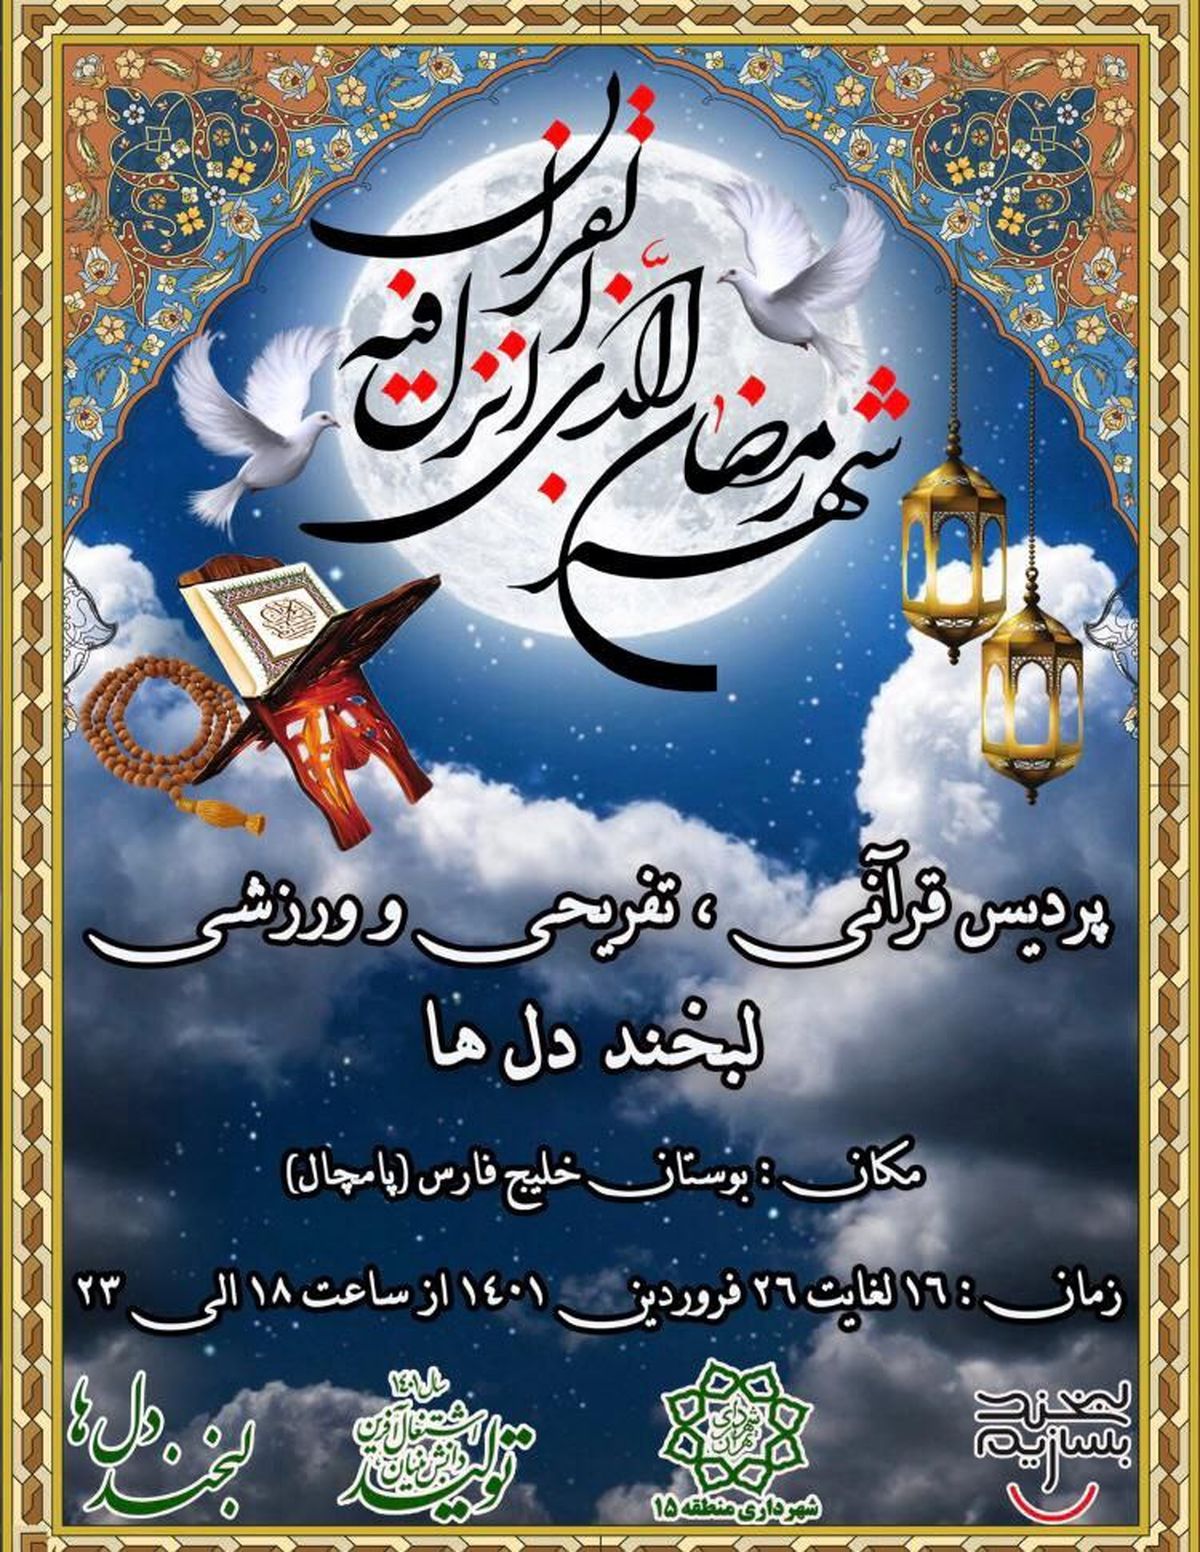 برپایی پردیس قرآنی در بوستان خلیج فارس منطقه 15